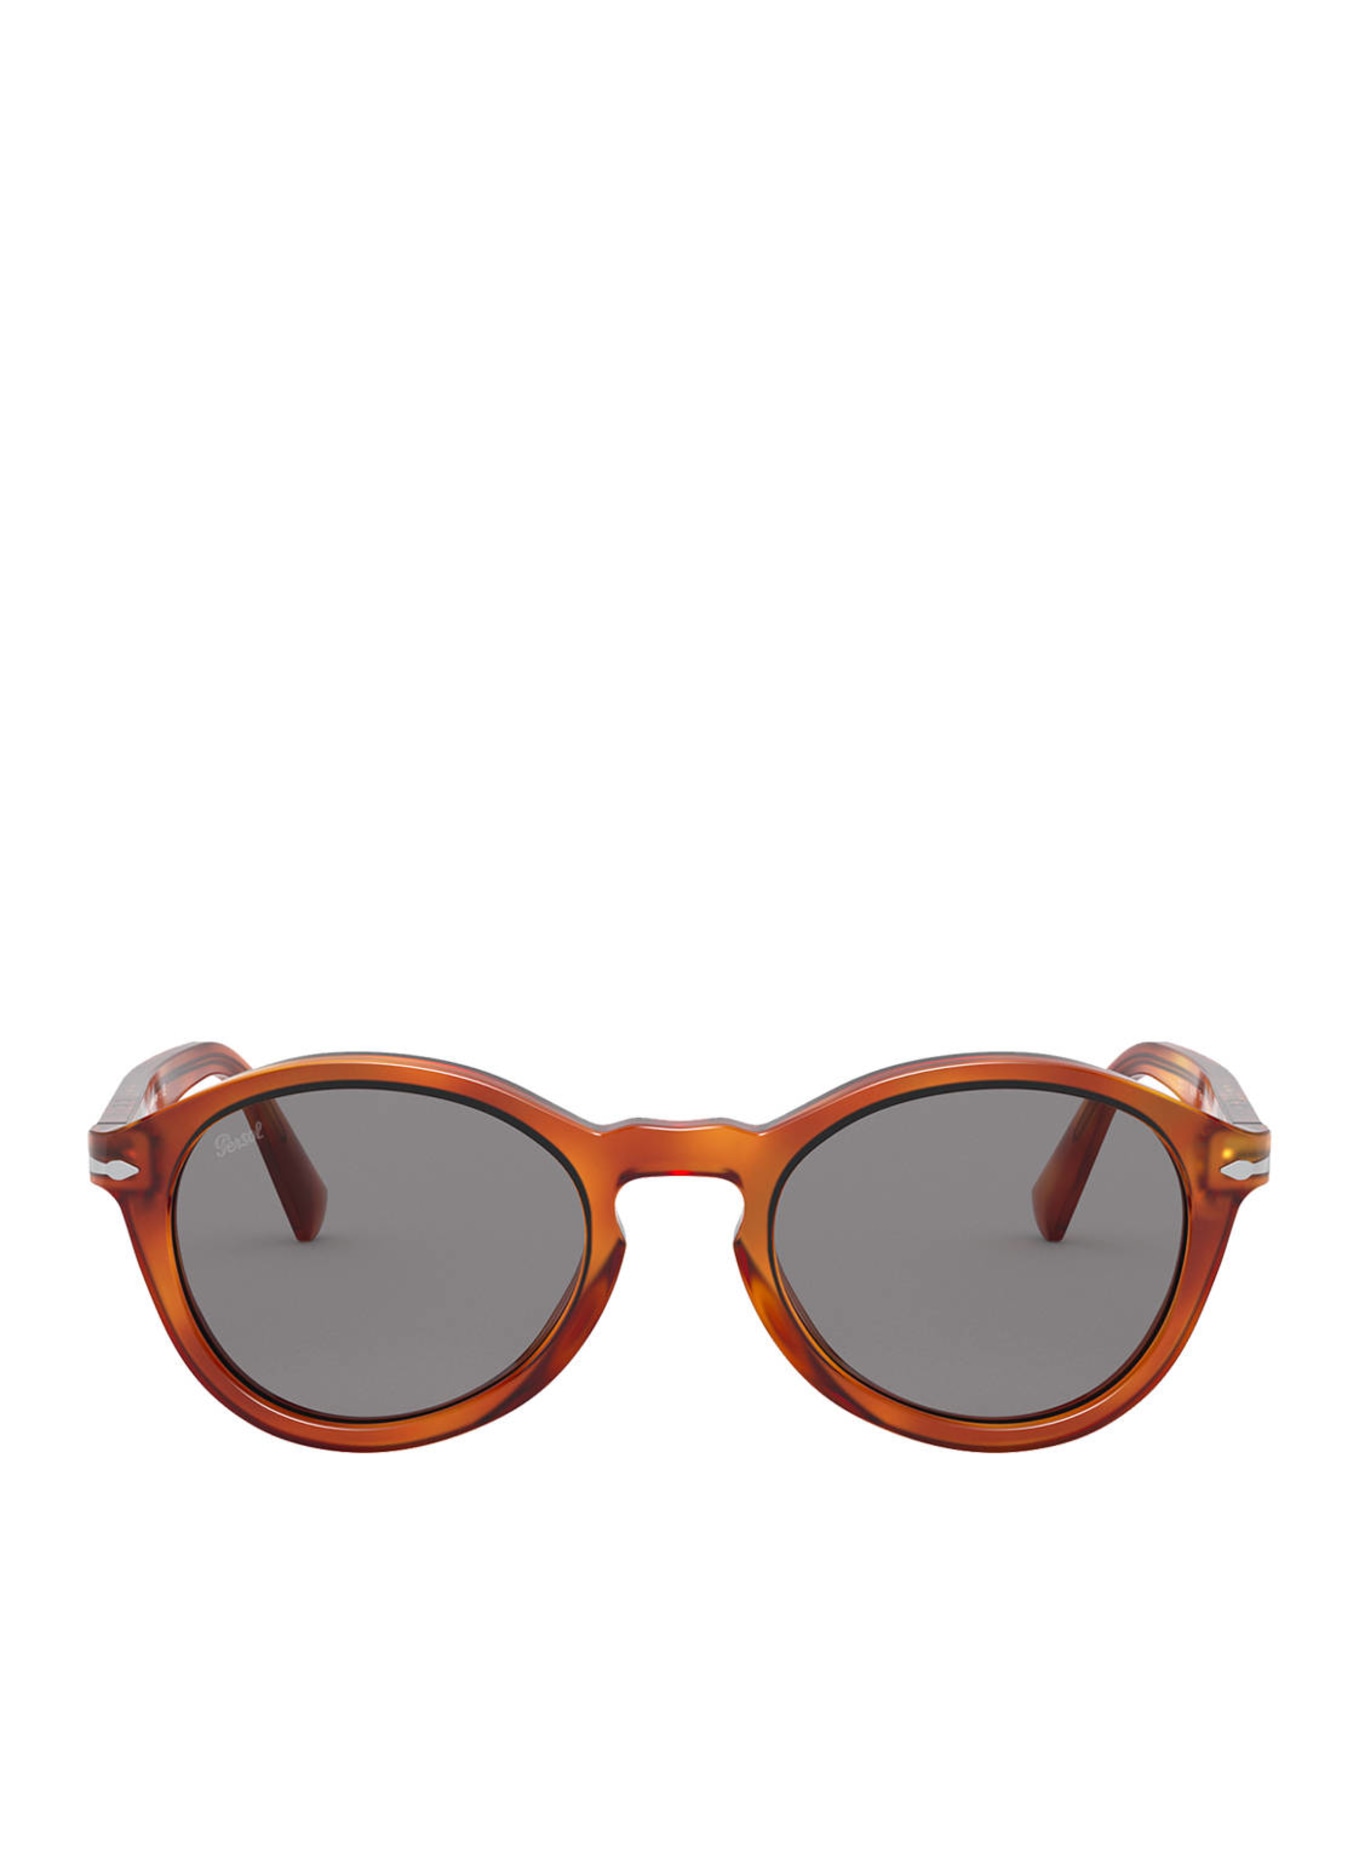 Persol Sunglasses PO3237S, Color: 96/R5 - BROWN/ GRAY (Image 2)